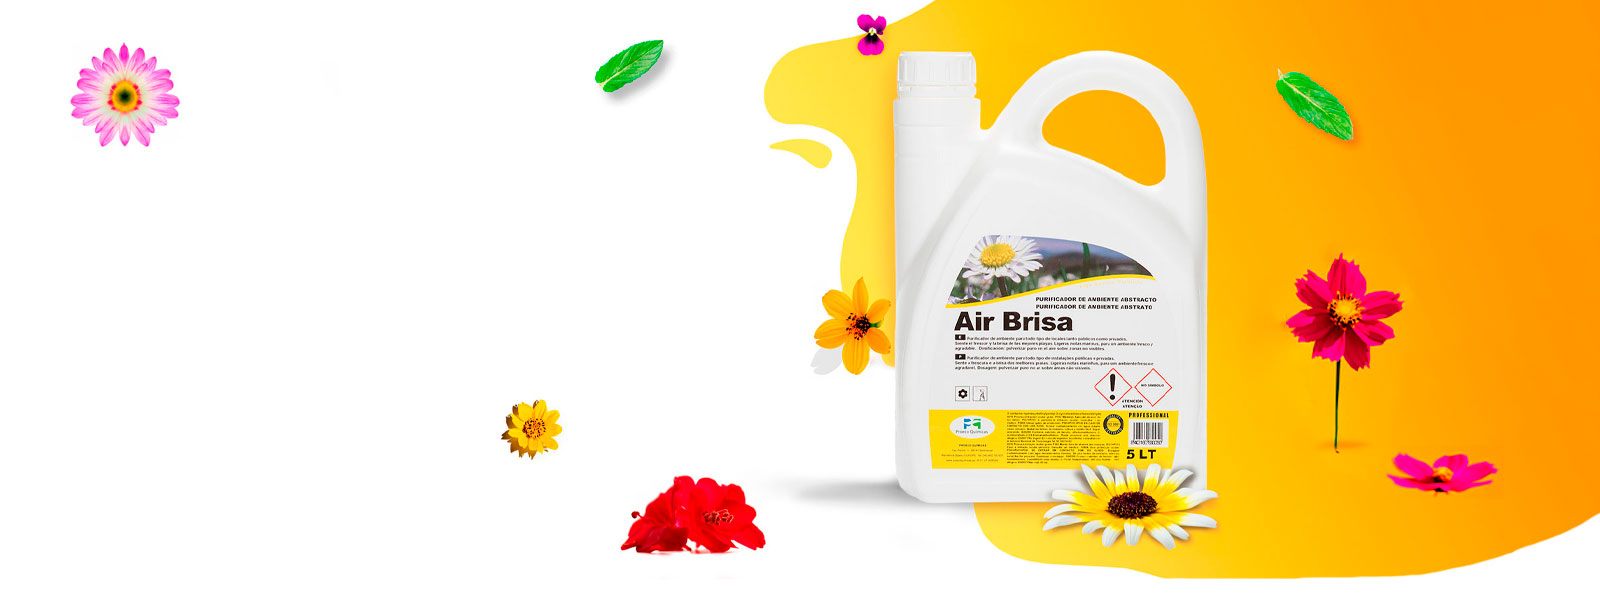 Air Brisa -Ambientador purificador de ambiente Aroma Abstracto - Envase 5 lts